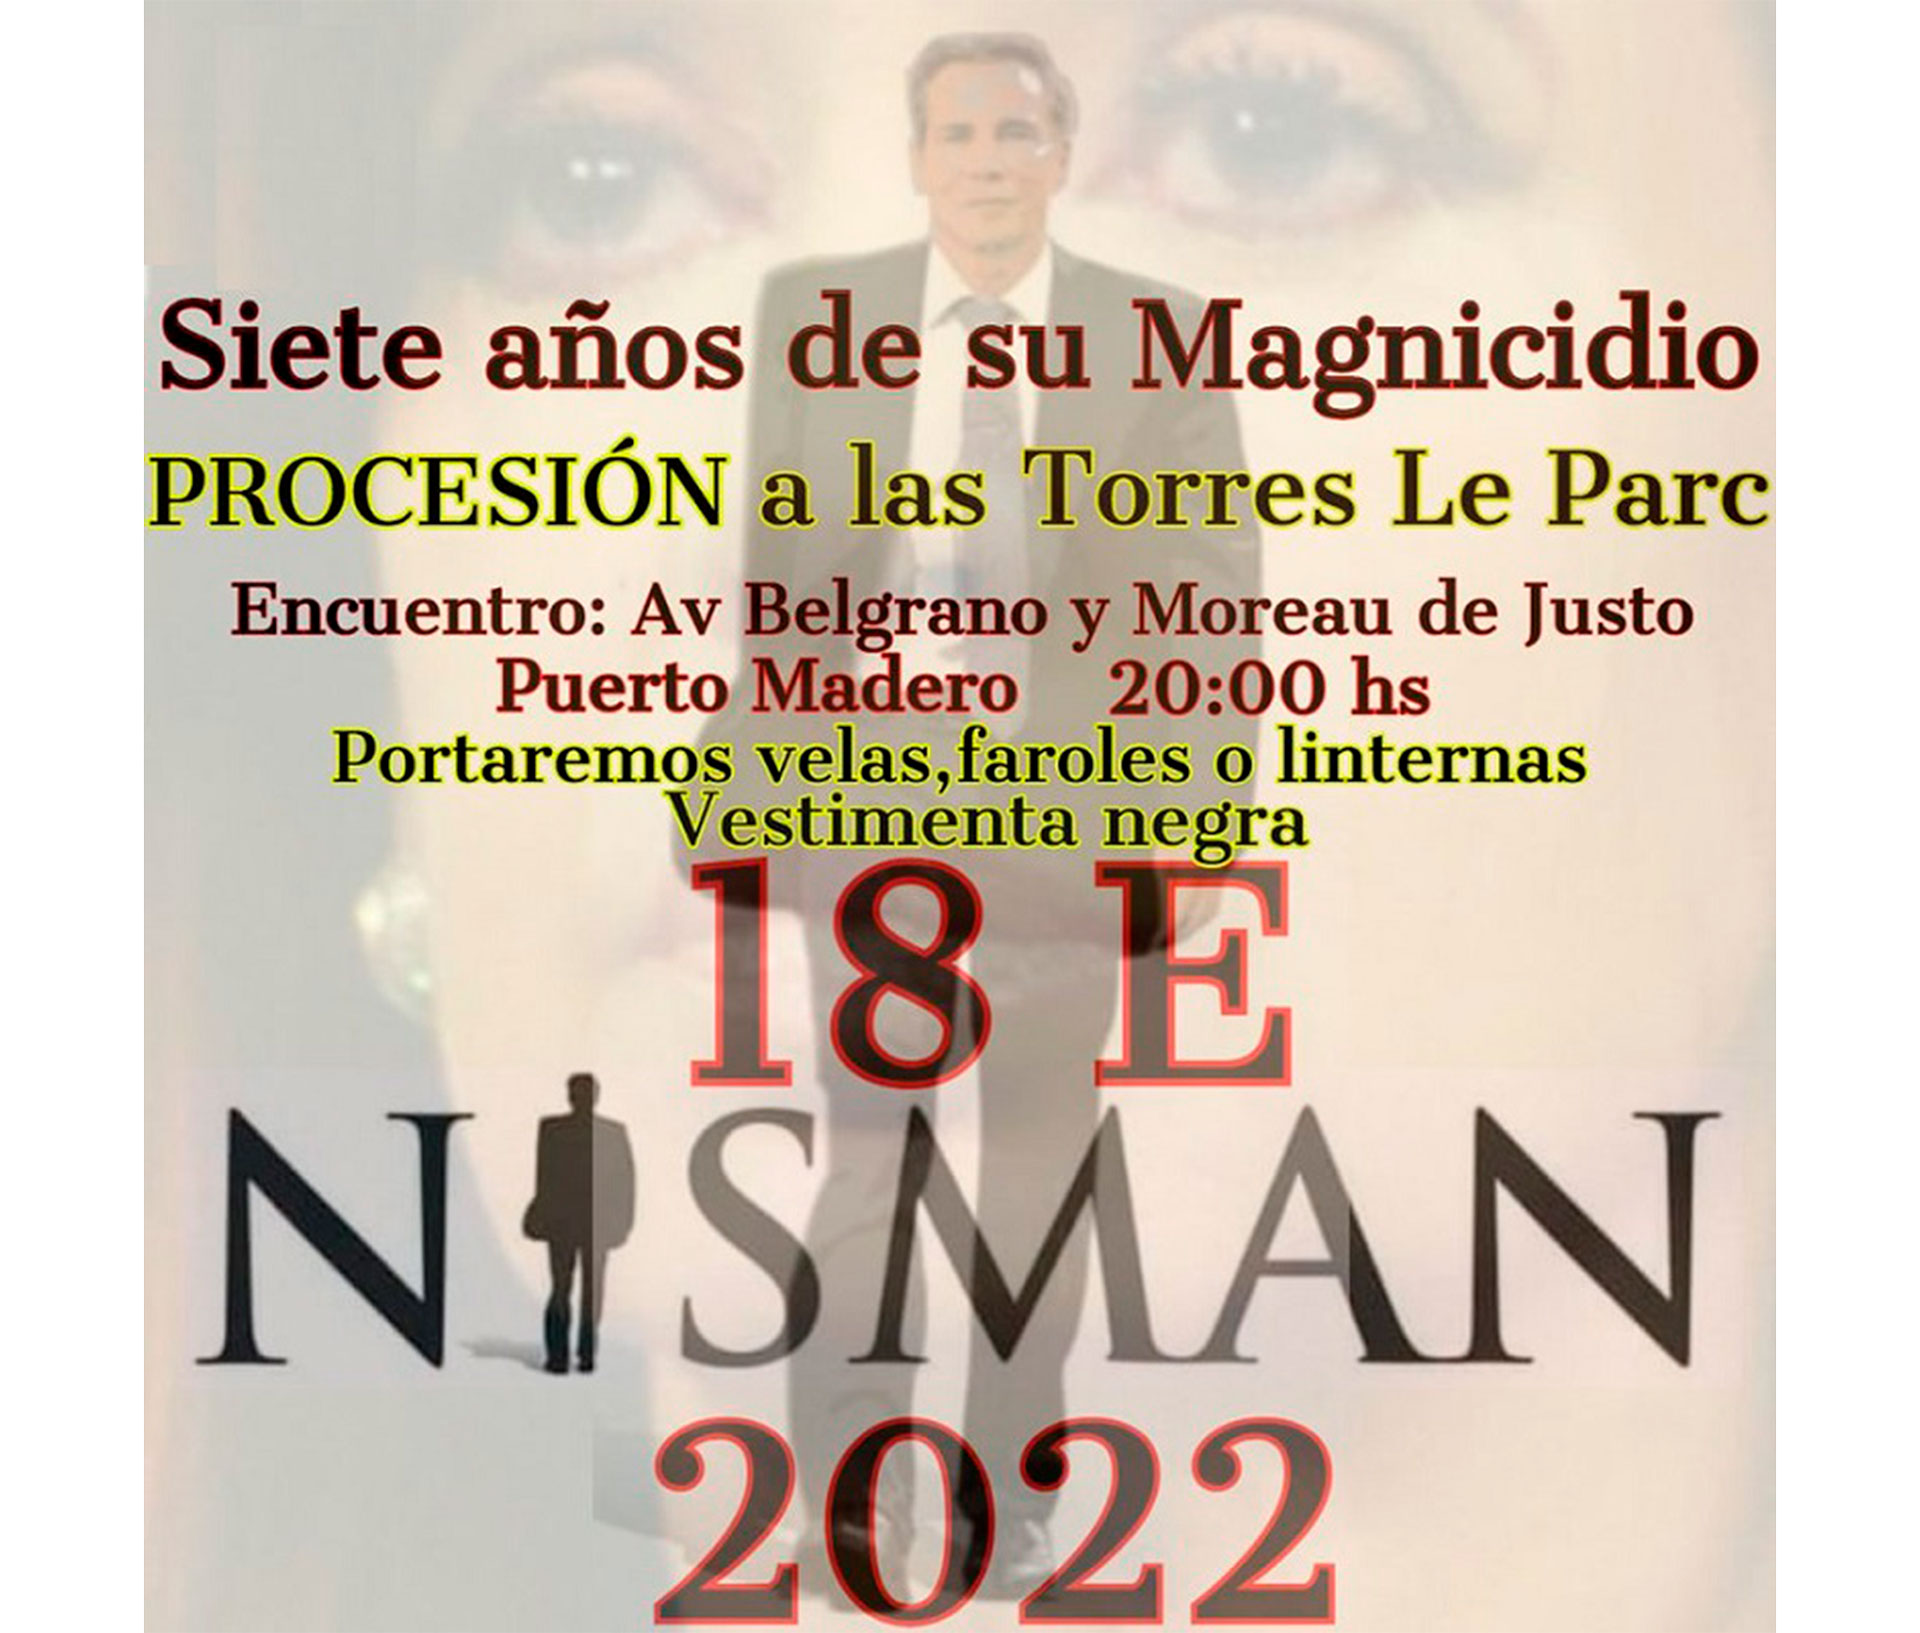 Una de las invitaciones a la procesión en reclamo de justicia por Alberto Nisman